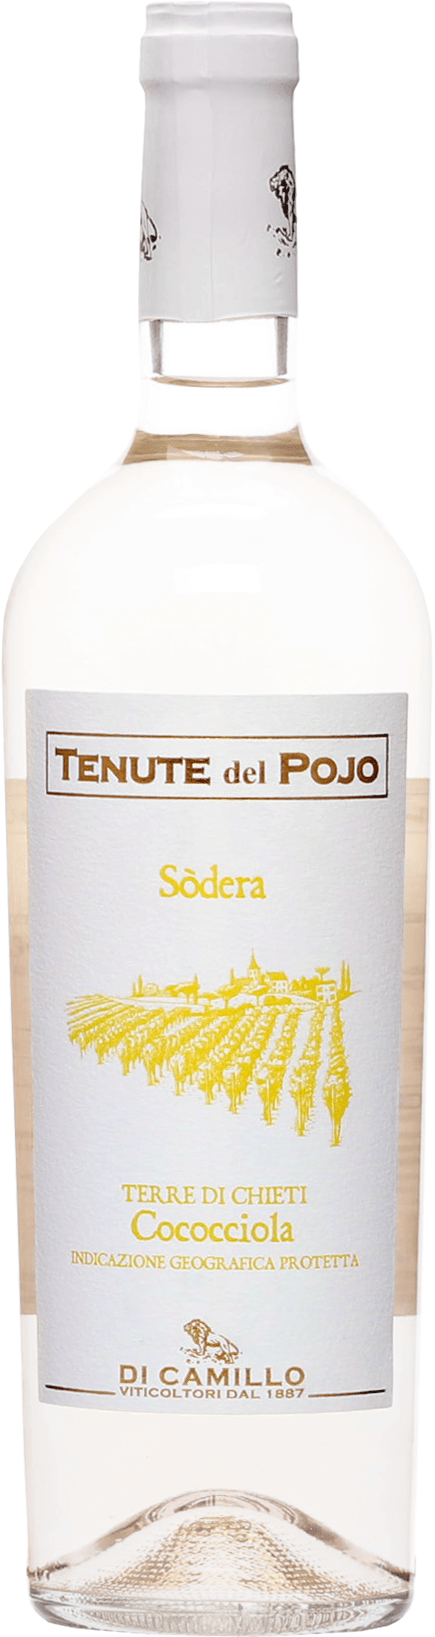 Di Camillo Tenute del Pojo Cococciola Terre di Chieti 13% 0,75l (čistá fľaša)